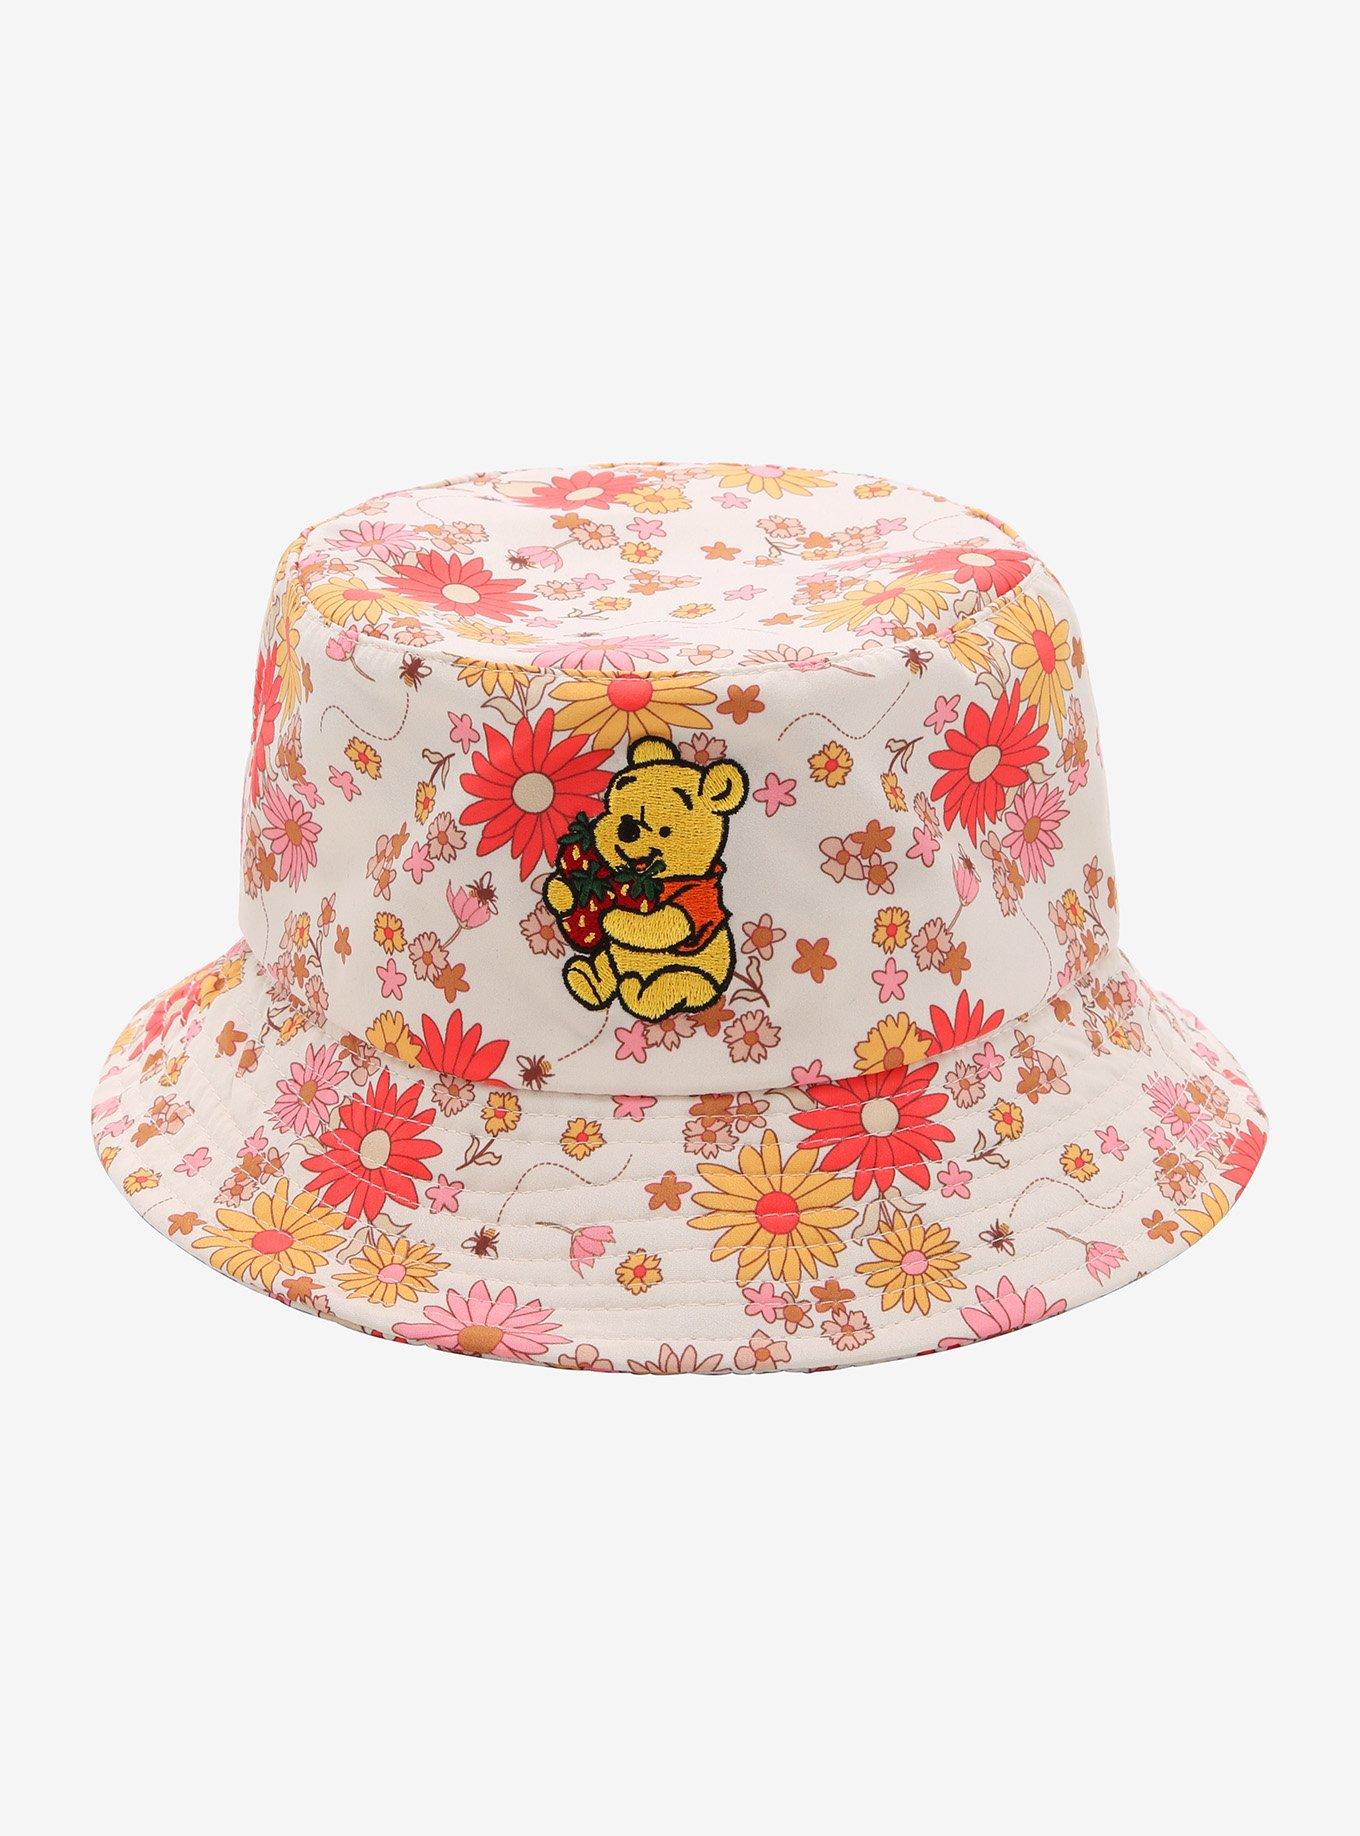 Disney Winnie The Pooh Floral Bucket Hat, , hi-res